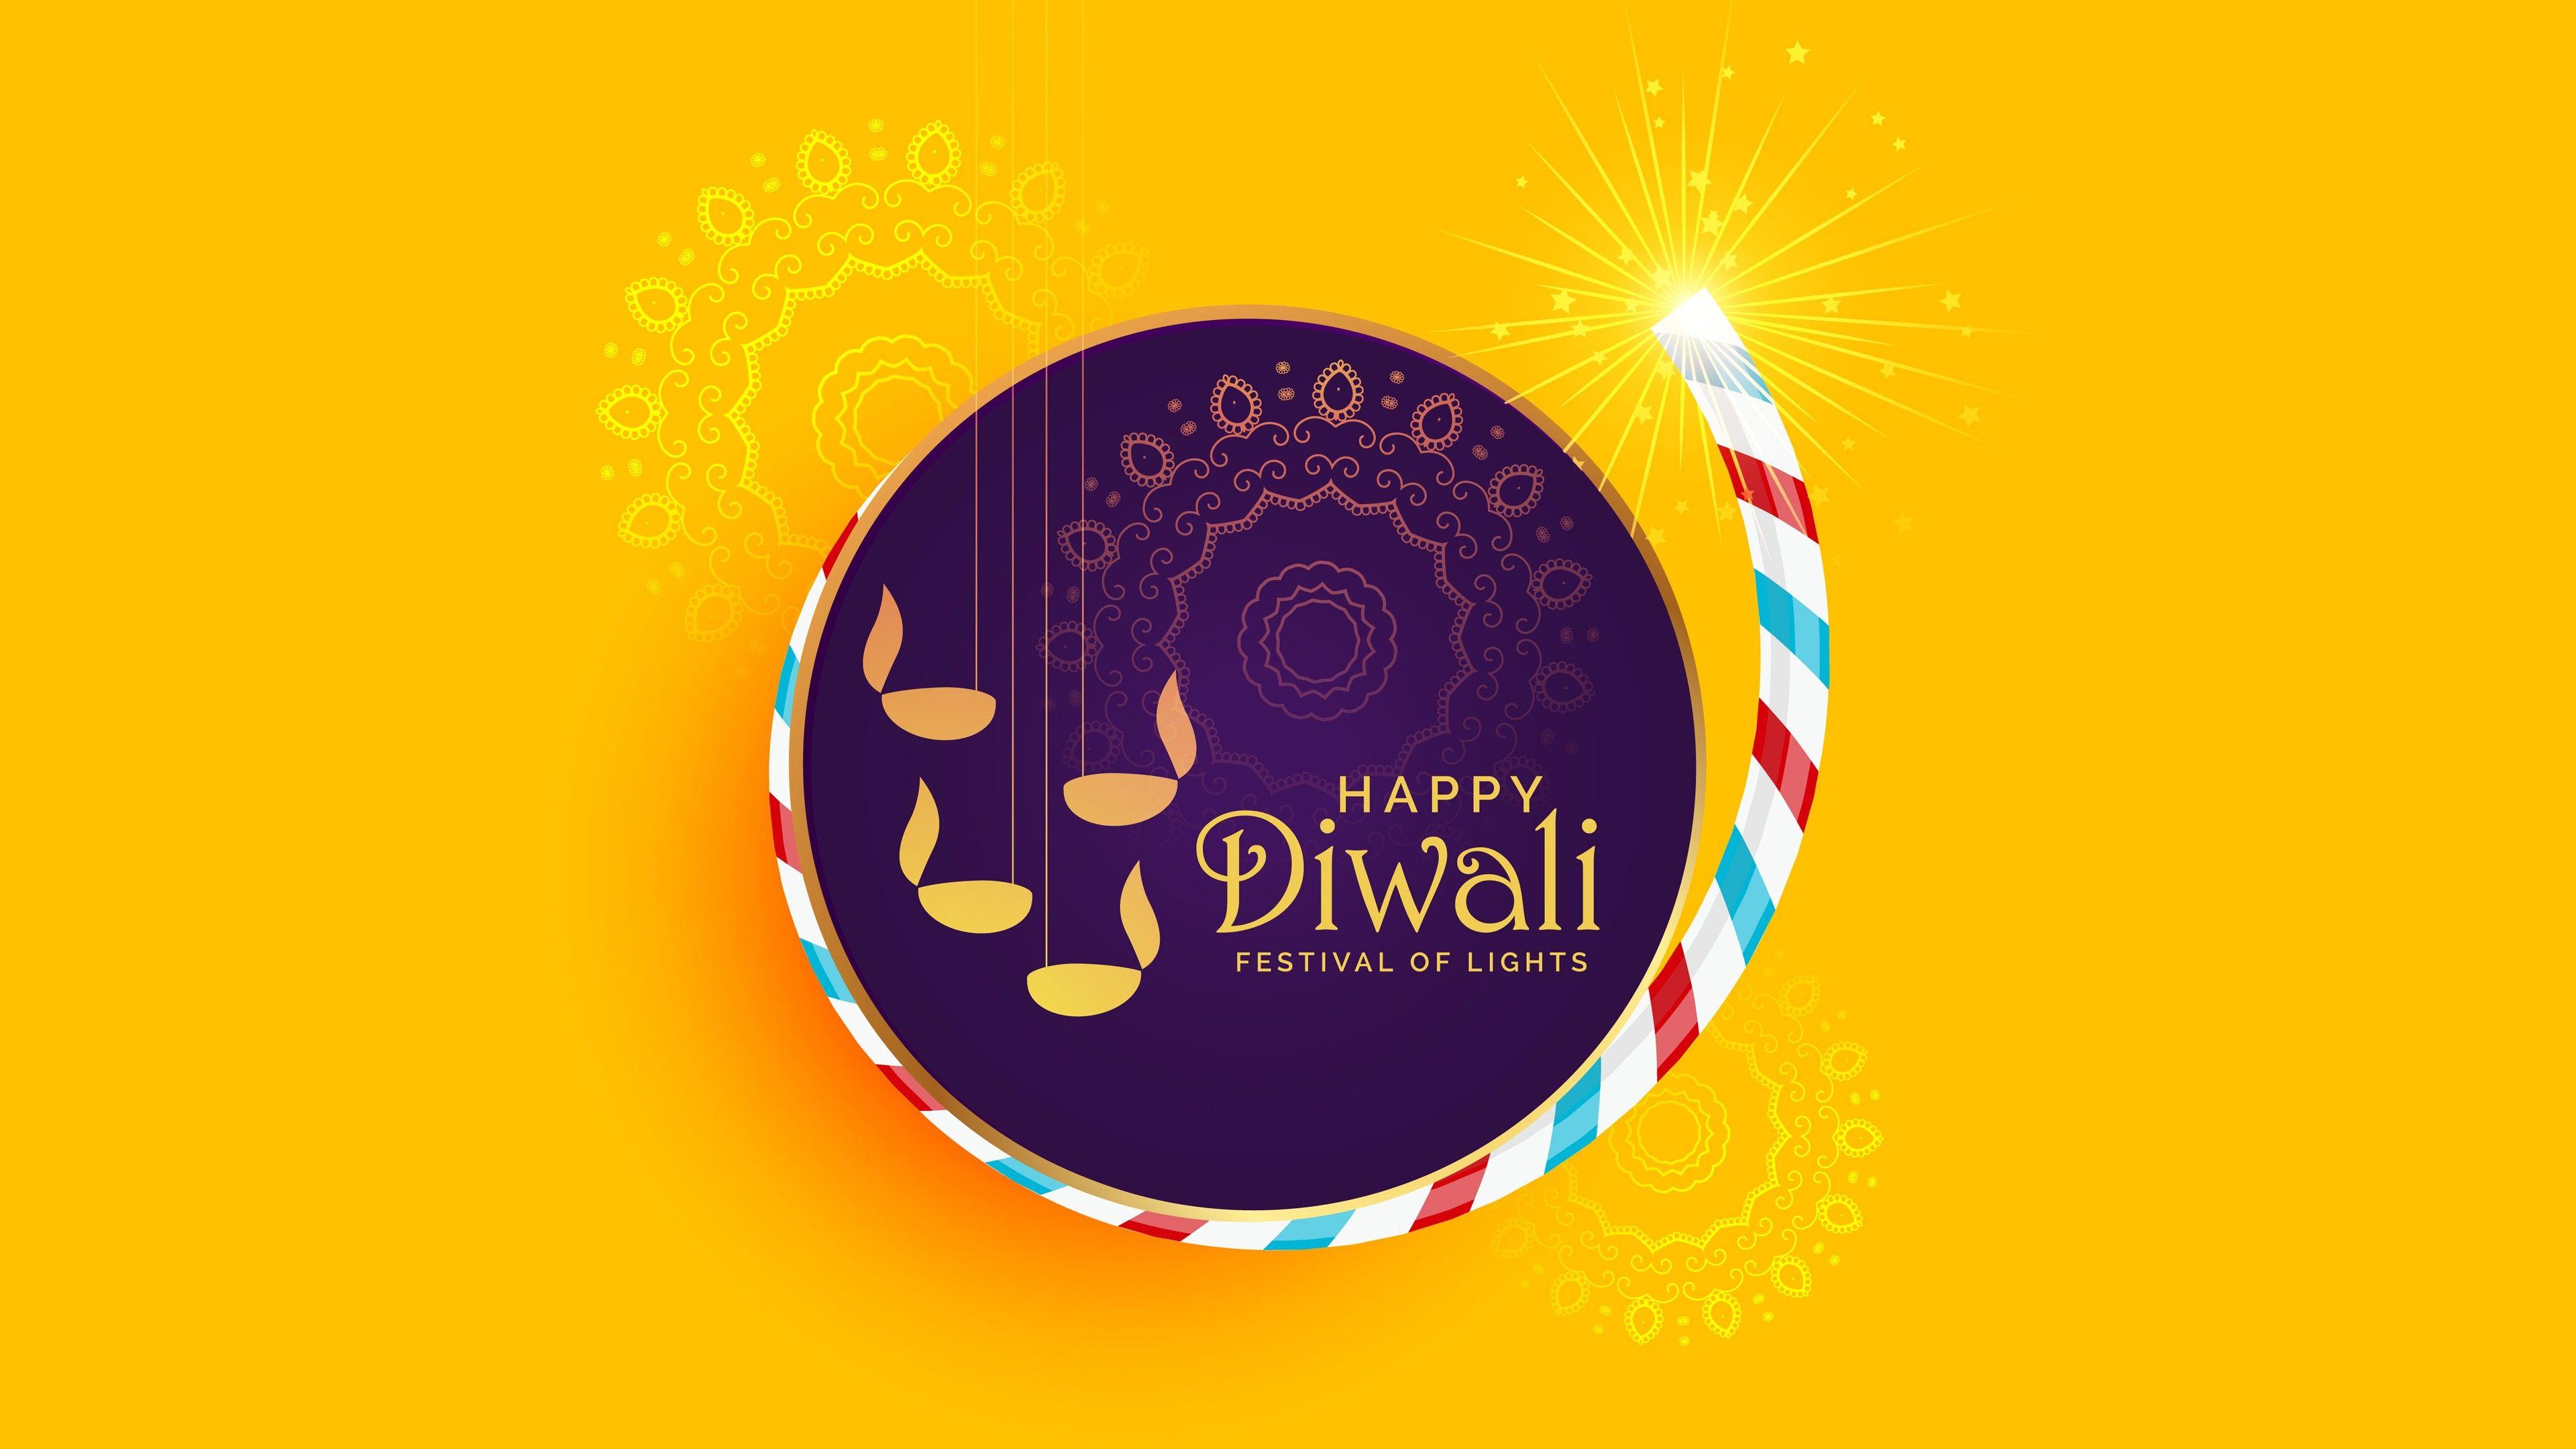 3840x2160 Hình nền 4K của Lễ hội Diwali hạnh phúc